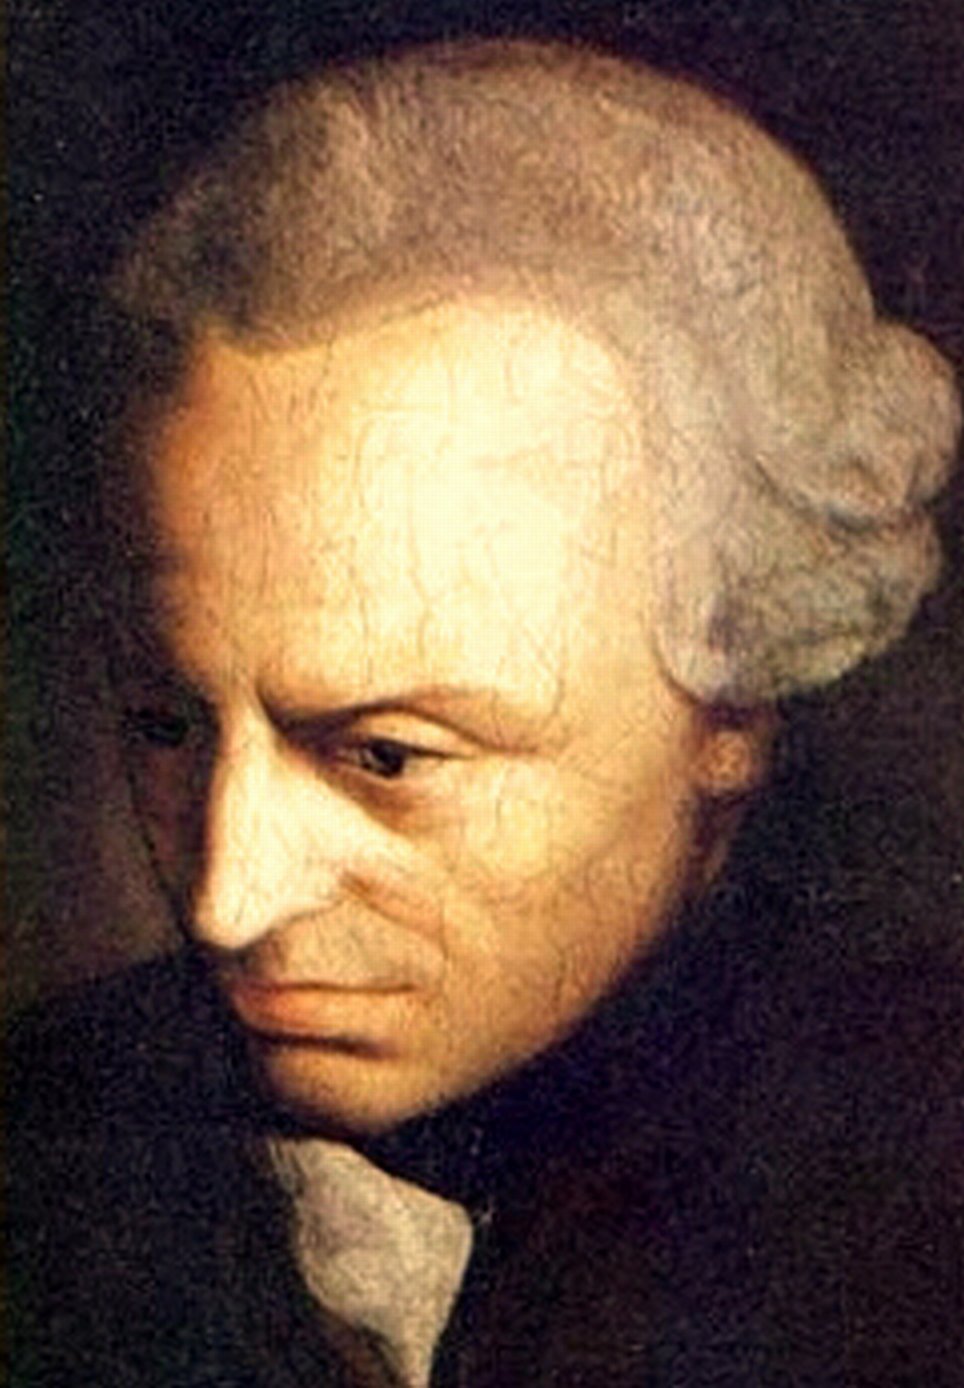 Retrato de Immanuel Kant